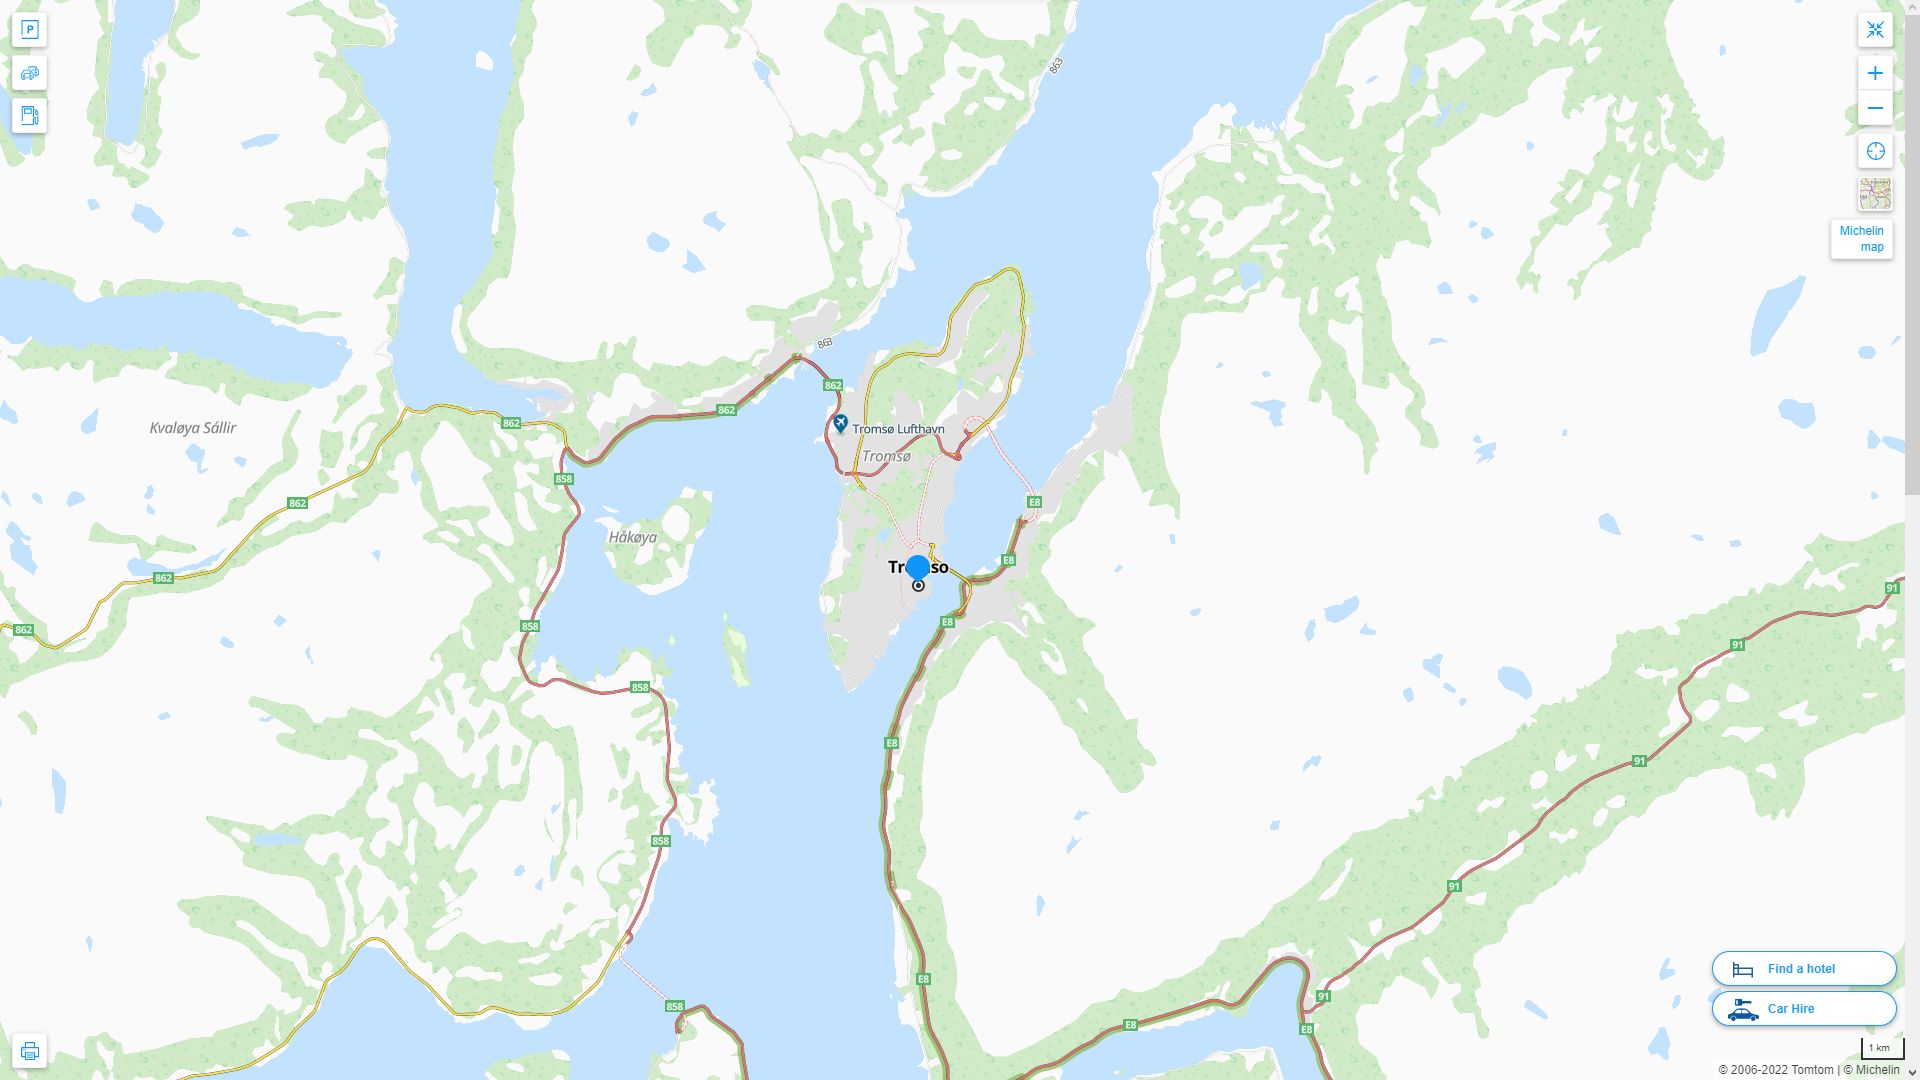 Tromso Norvege Autoroute et carte routiere